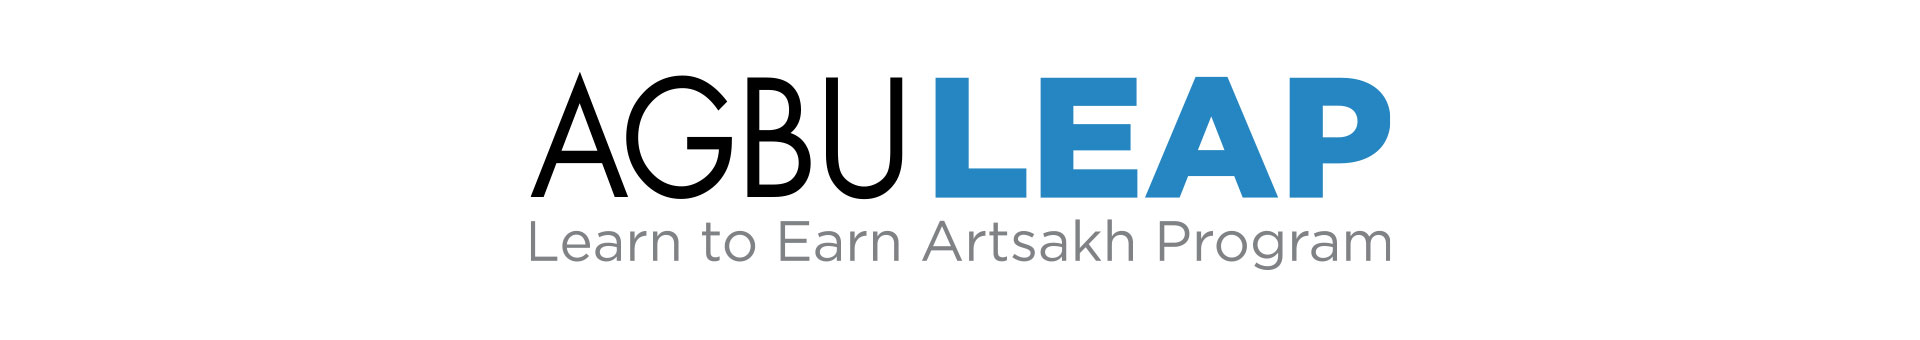 Learn To Earn Artsakh Program